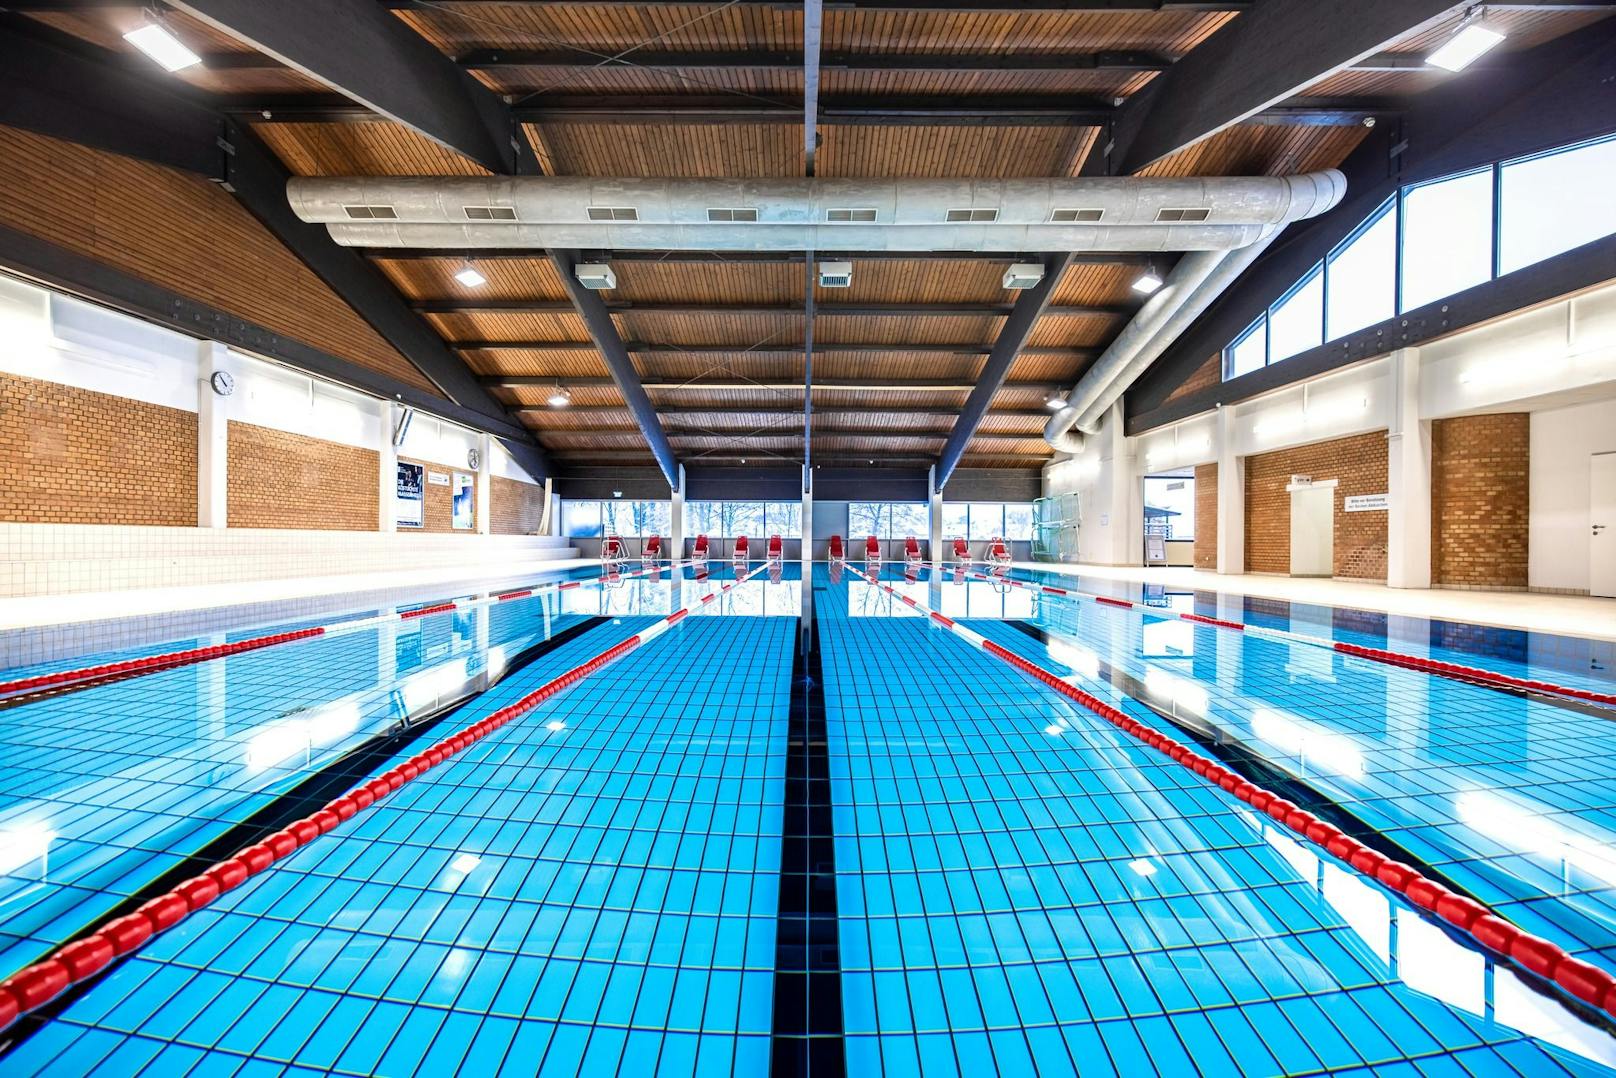 Das Sportbecken im Klosterneuburger Happyland ist täglich ausgelastet: Hier schwimmen Vereine, Hobbysportler und Hunderte Kinder.